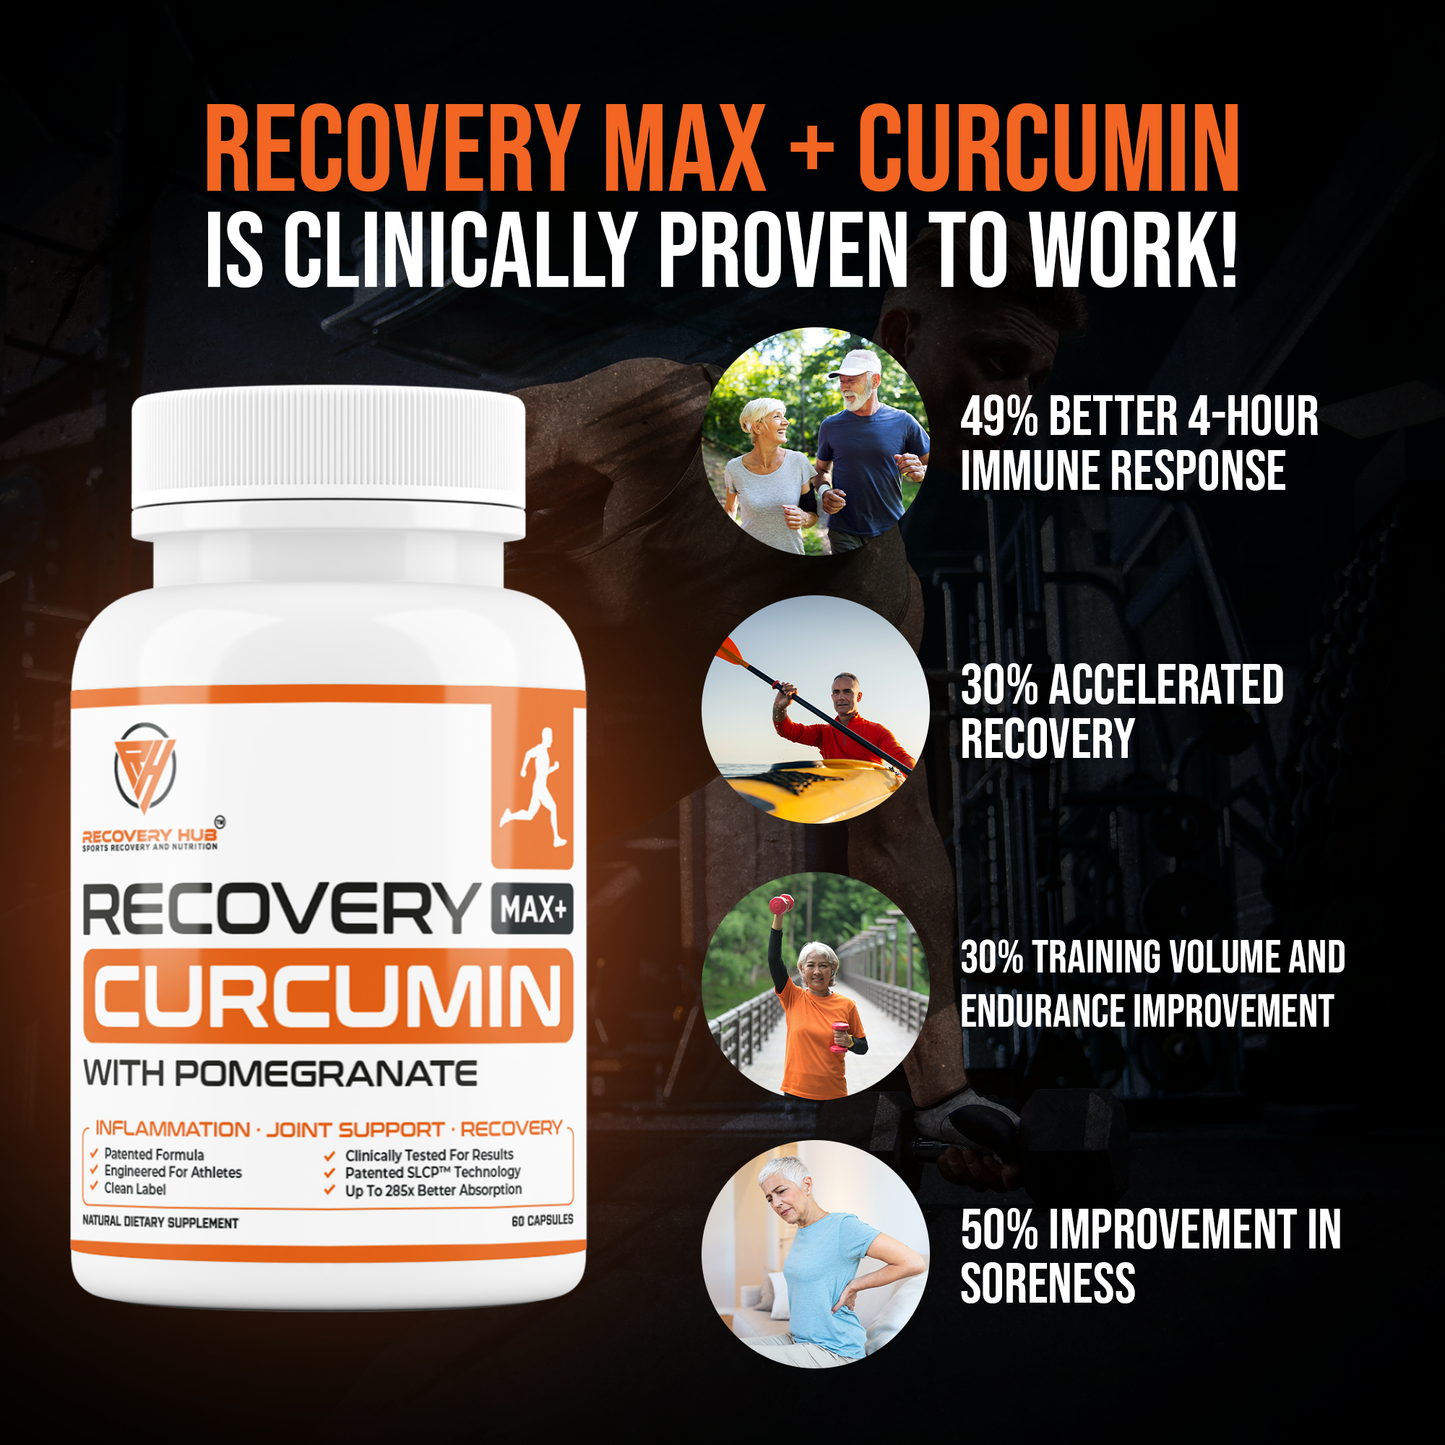 Recovery Max+ Curcumin